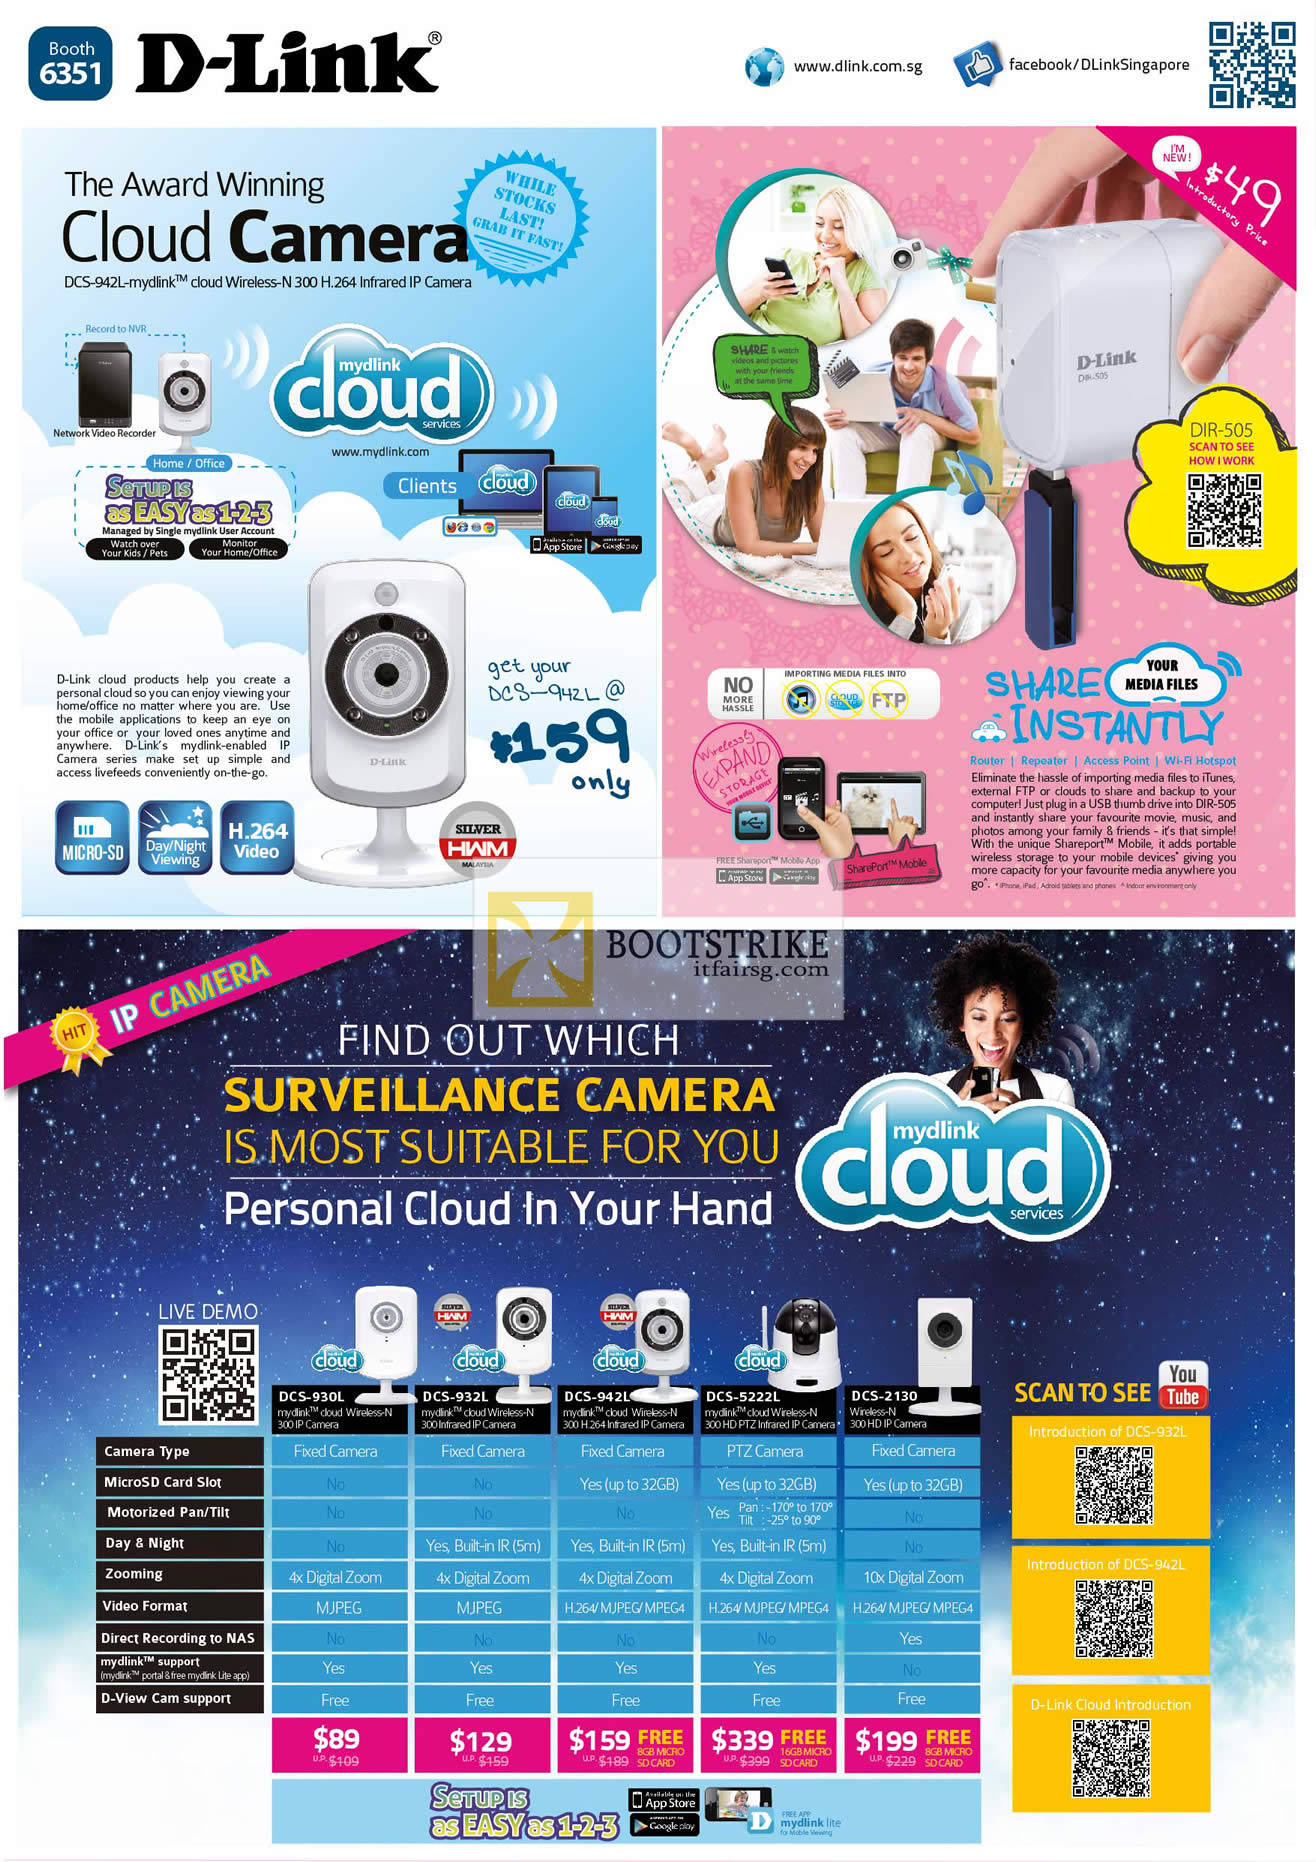 COMEX 2012 price list image brochure of D-Link DCS-942L Cloud Camera, DIR-505, IPCam DCS 930L 932L 942L 5222L 2130